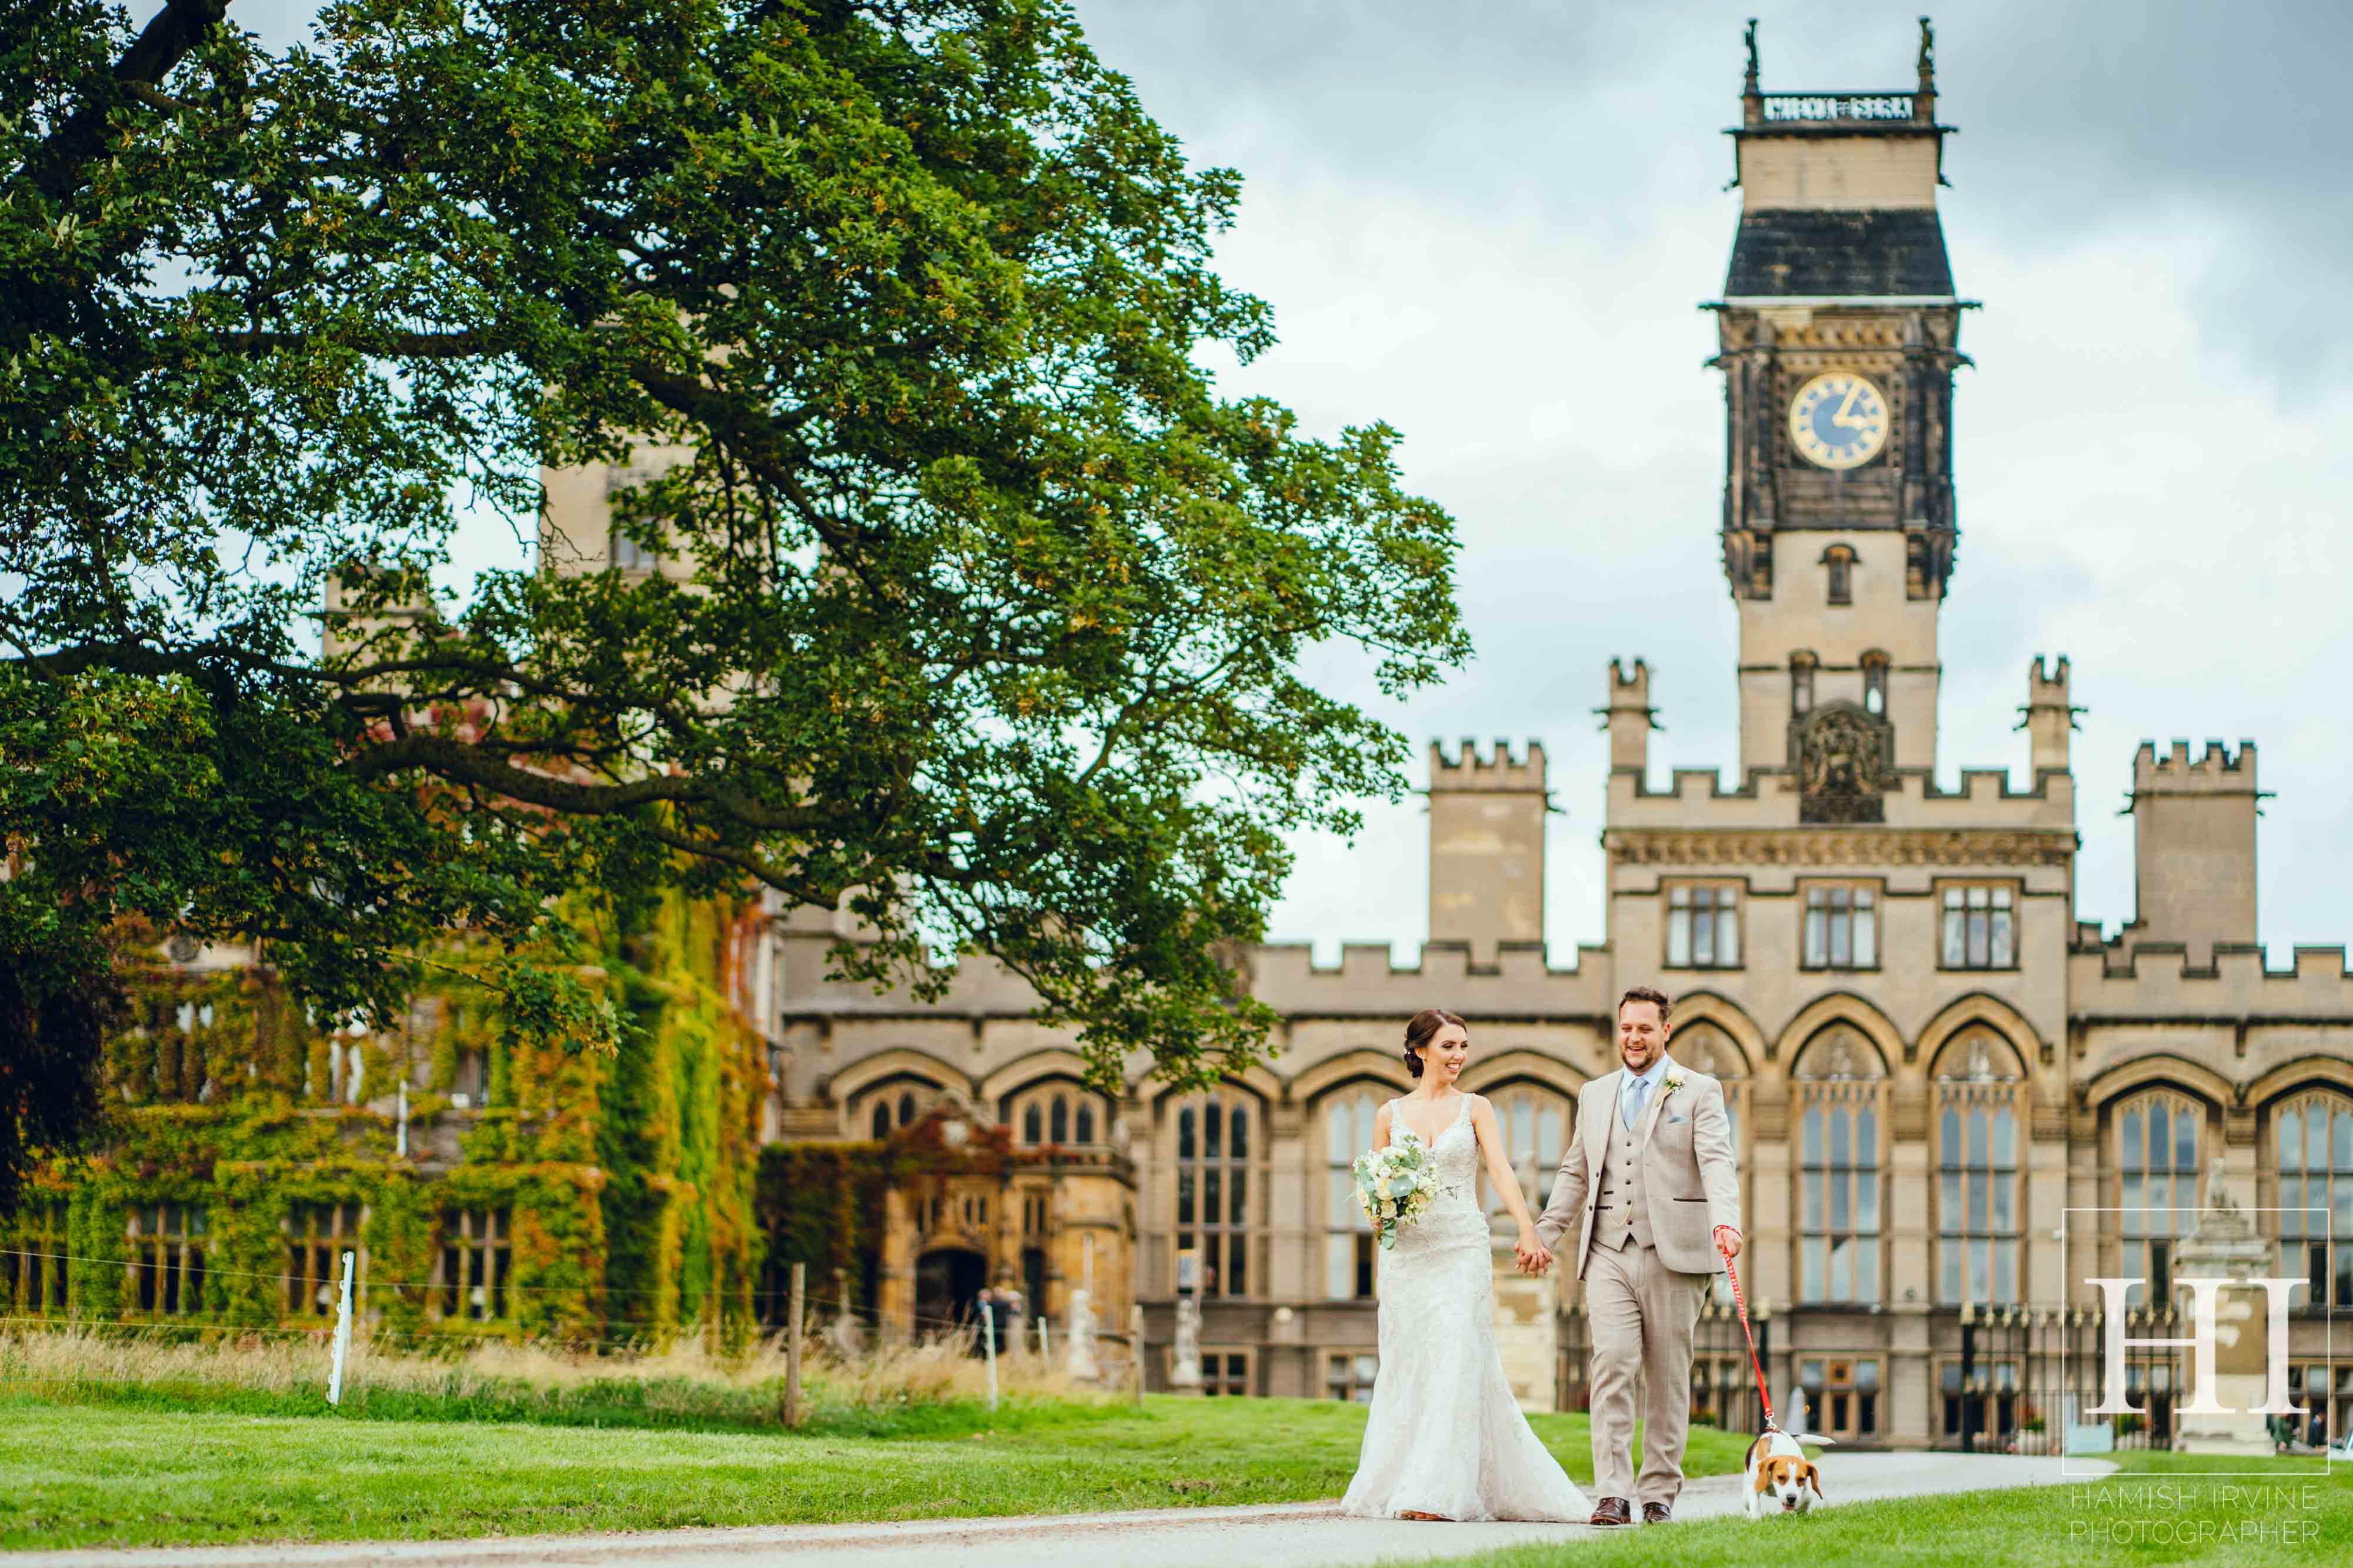 Best Leeds Colourful Wedding Photography 2019 Hamish Irvine Photographer